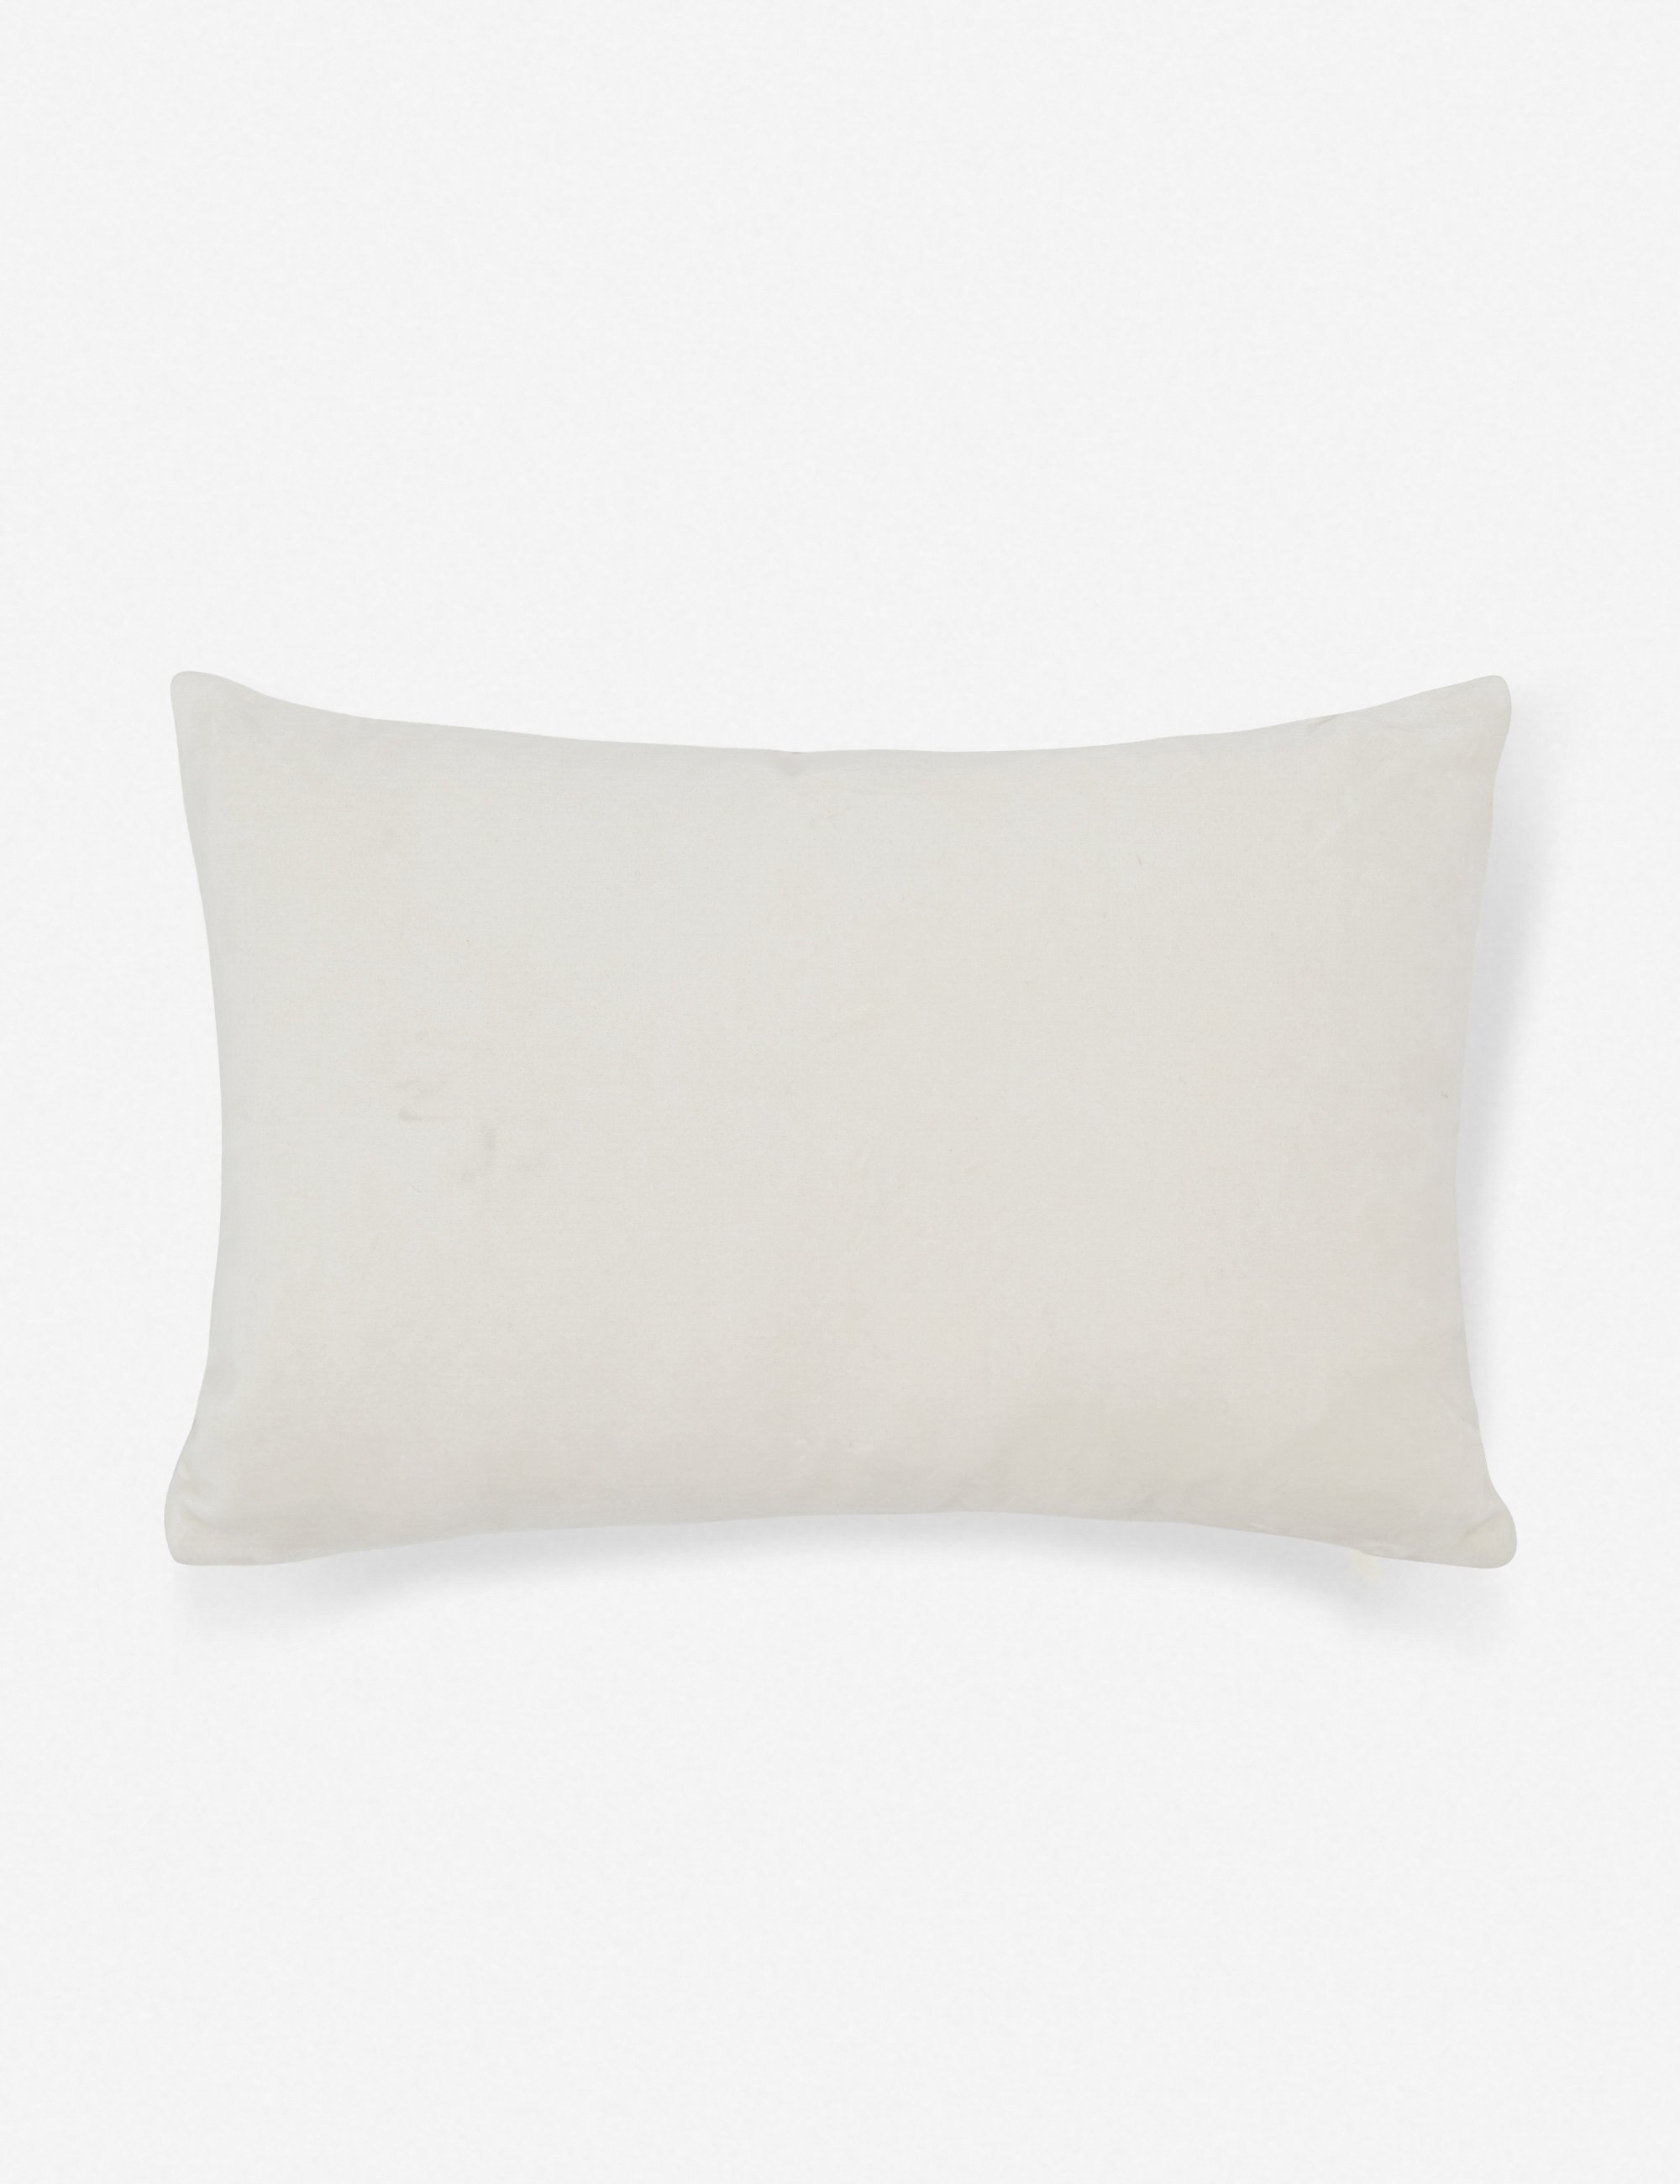 Charlotte Velvet Lumbar Pillow, Oyster, 20" x 13" - Image 0